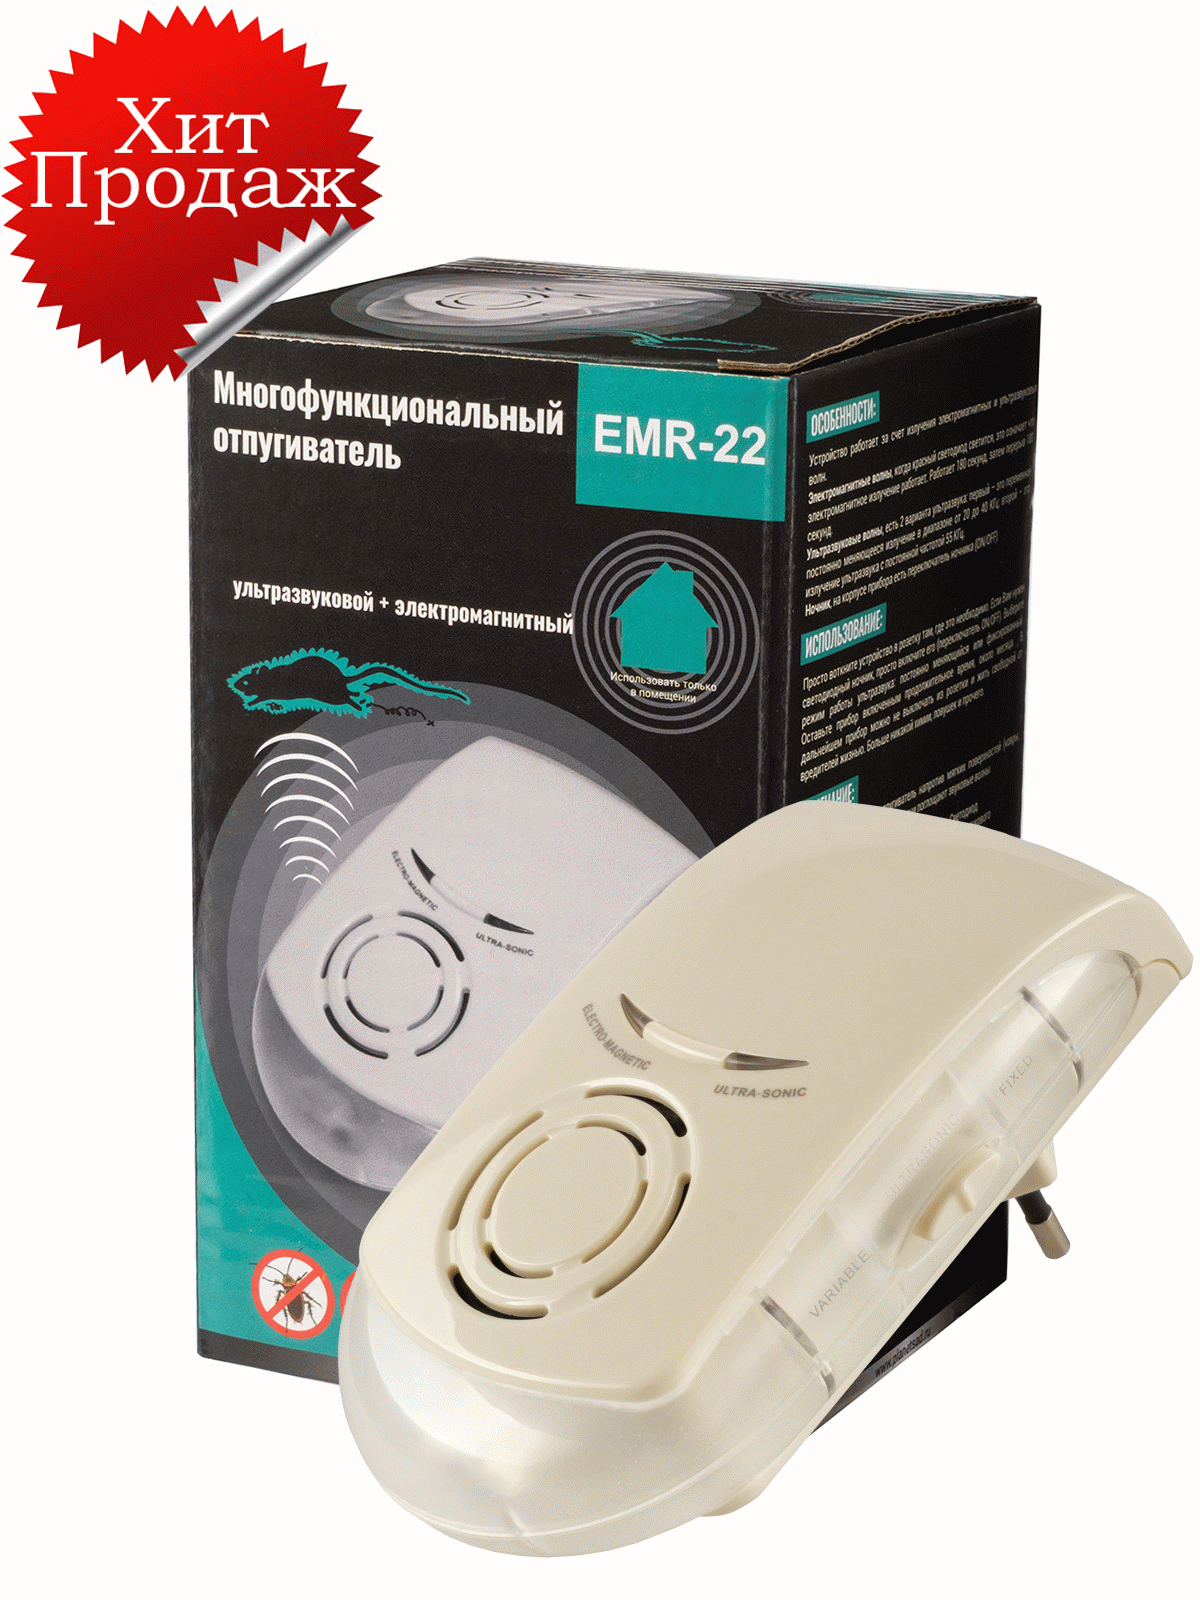 Многофункциональный отпугиватель EMR-22: электромагнитный + ультразвуковой + ночник